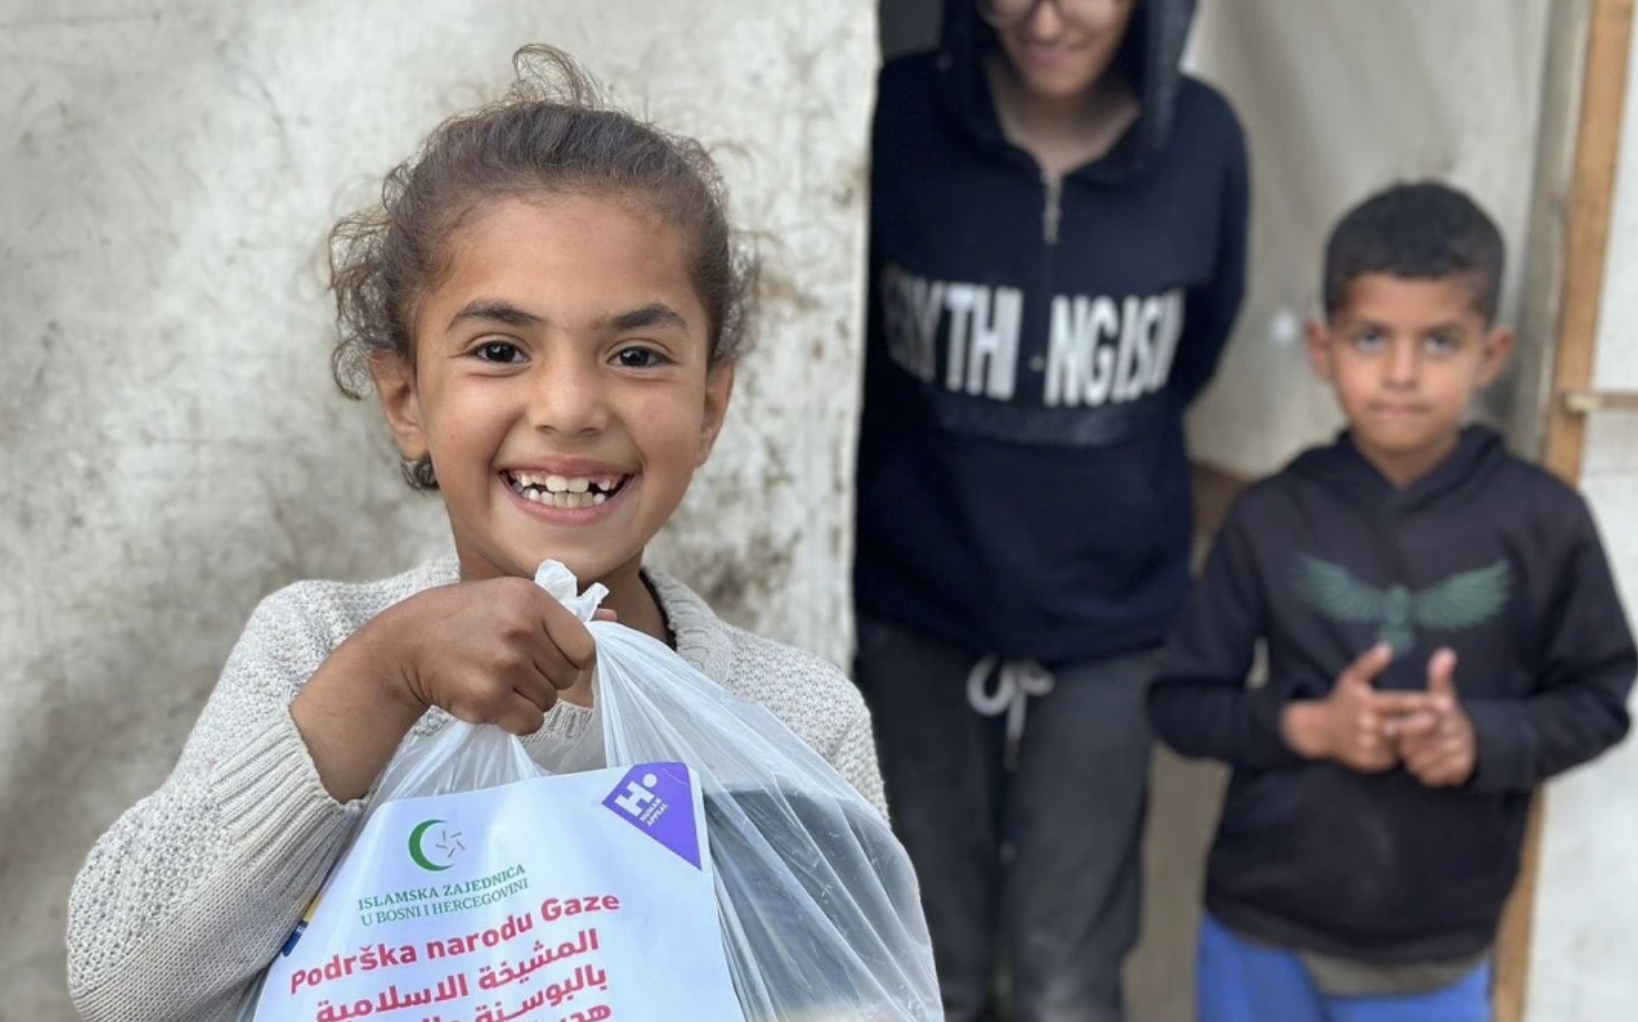 Islamska zajednica BiH osigurala tople obroke i iftare za stanovnike Gaze